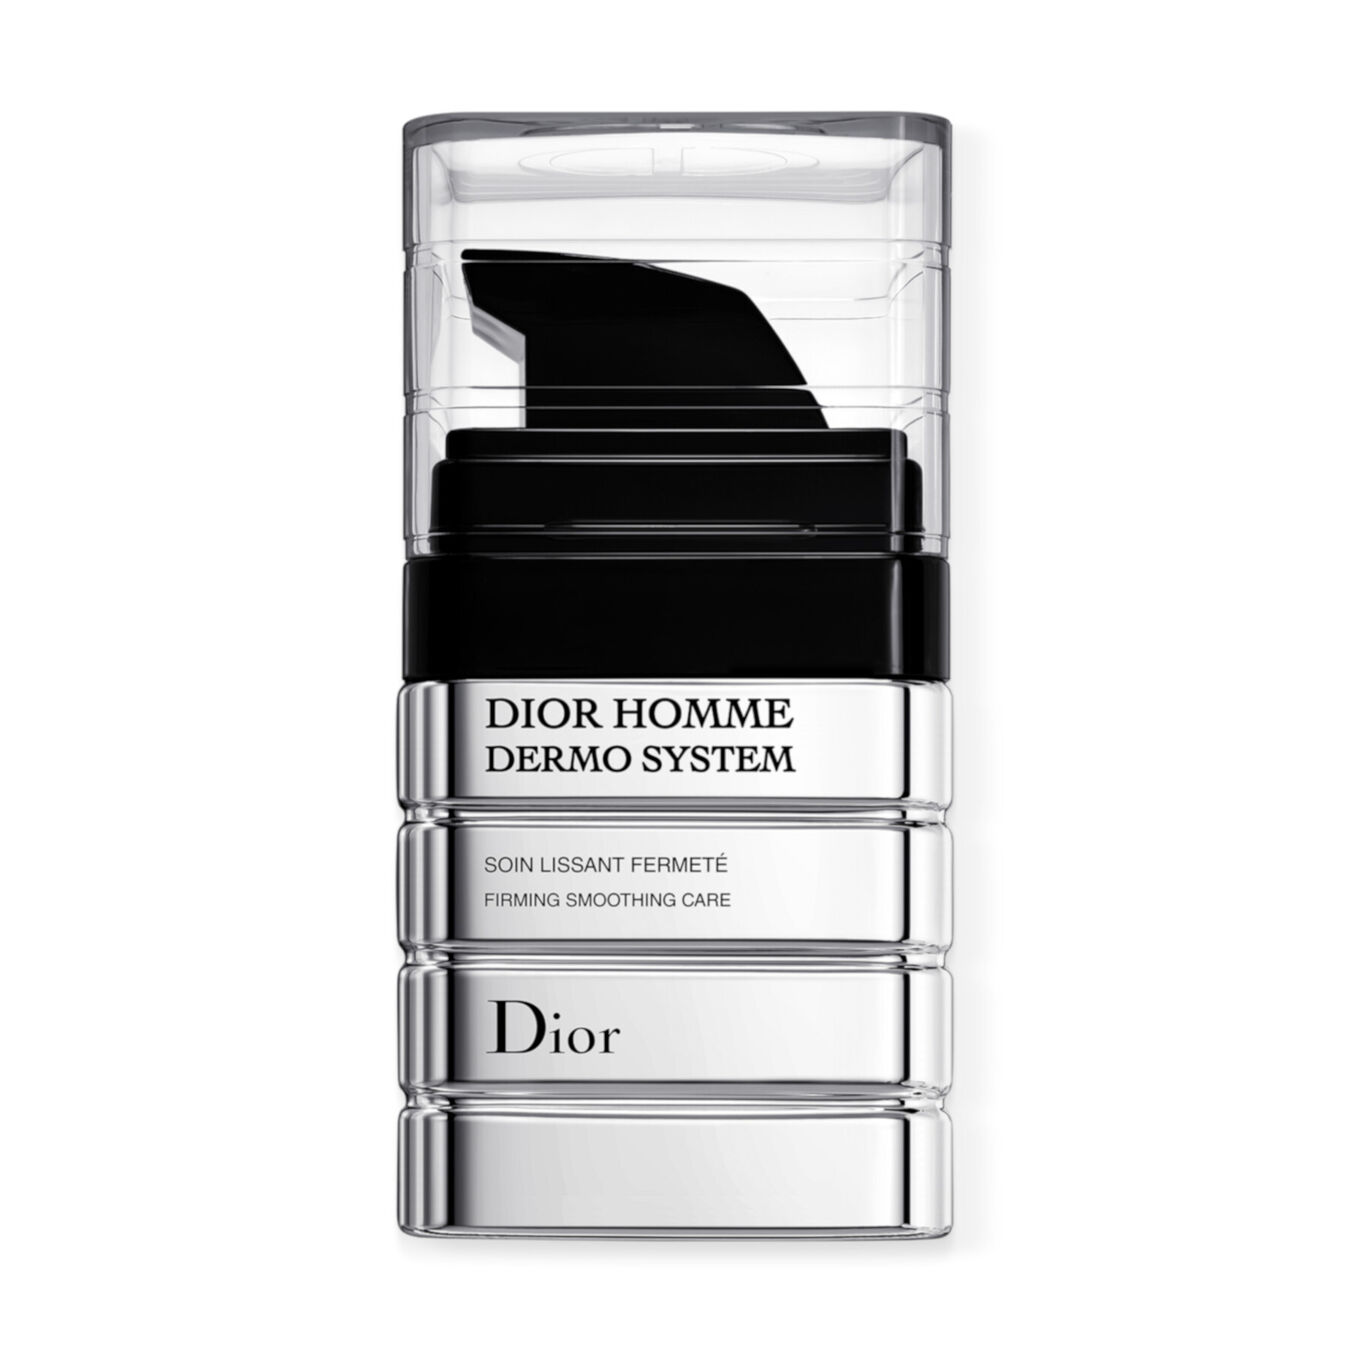 DIOR Homme Dermo System Firming Smoothing Care von Dior